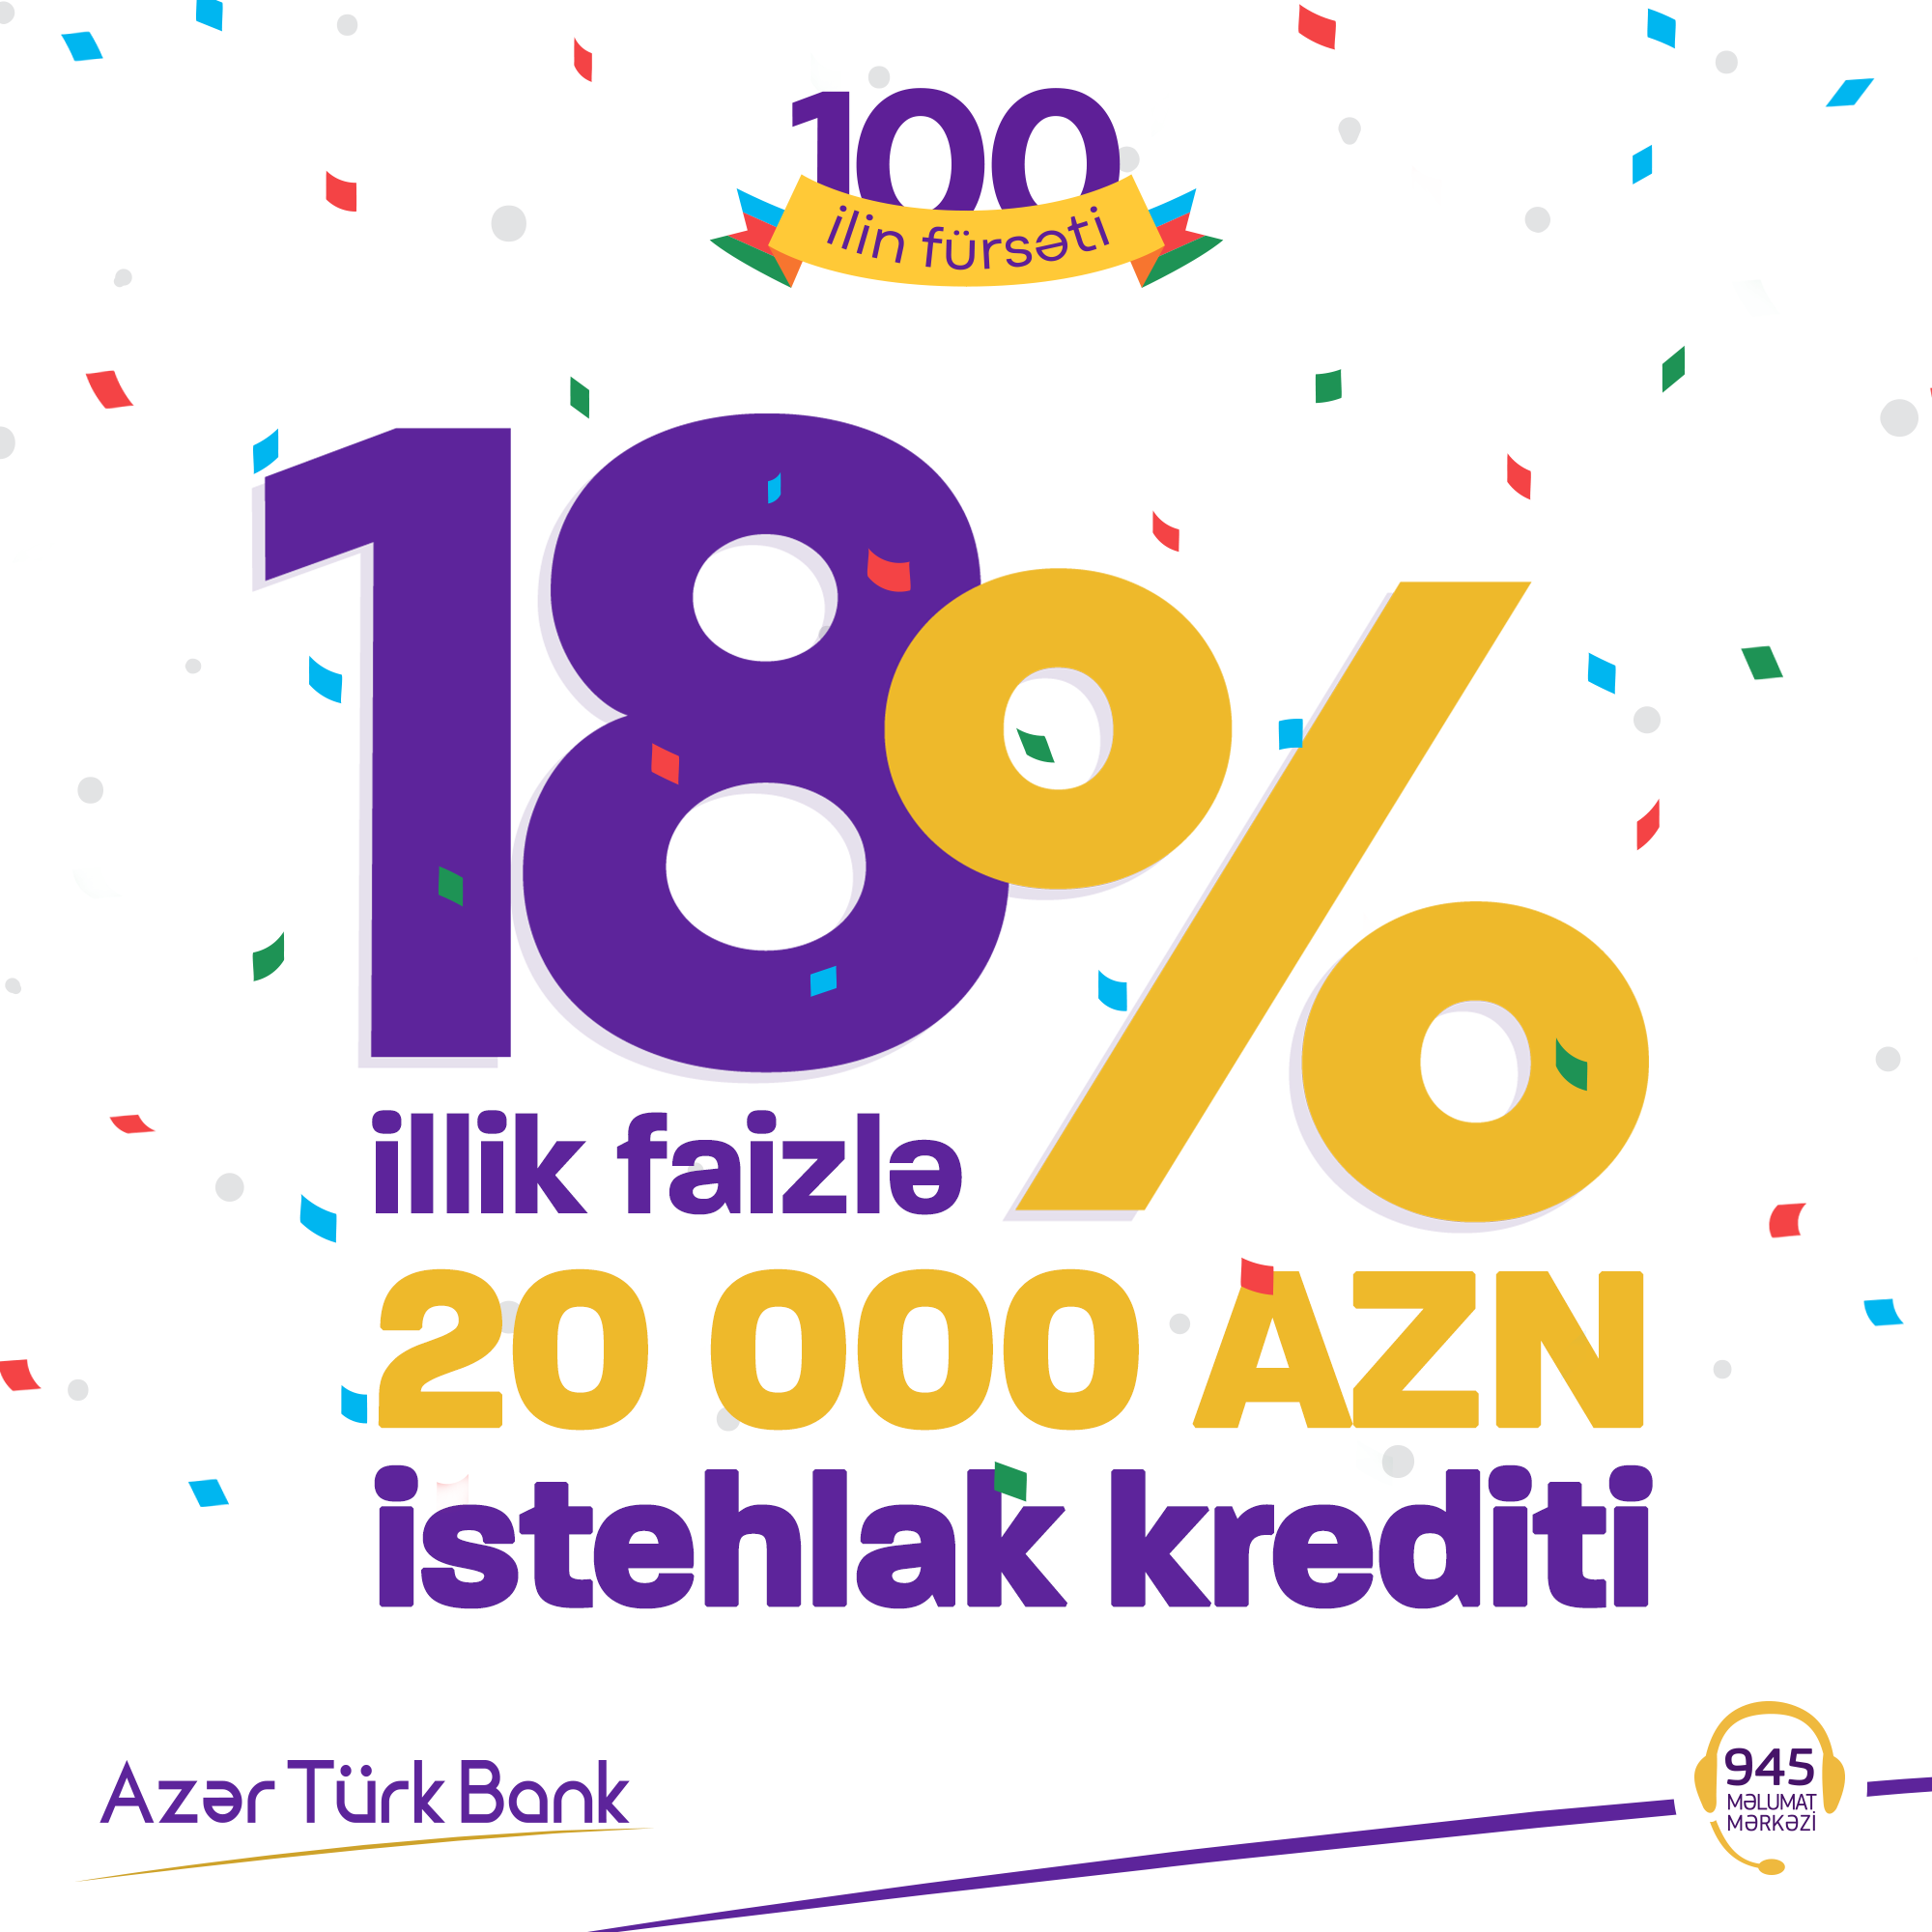 Azər Türk Bankdan zaminsiz 10.000 AZN-dək kredit imkanı!